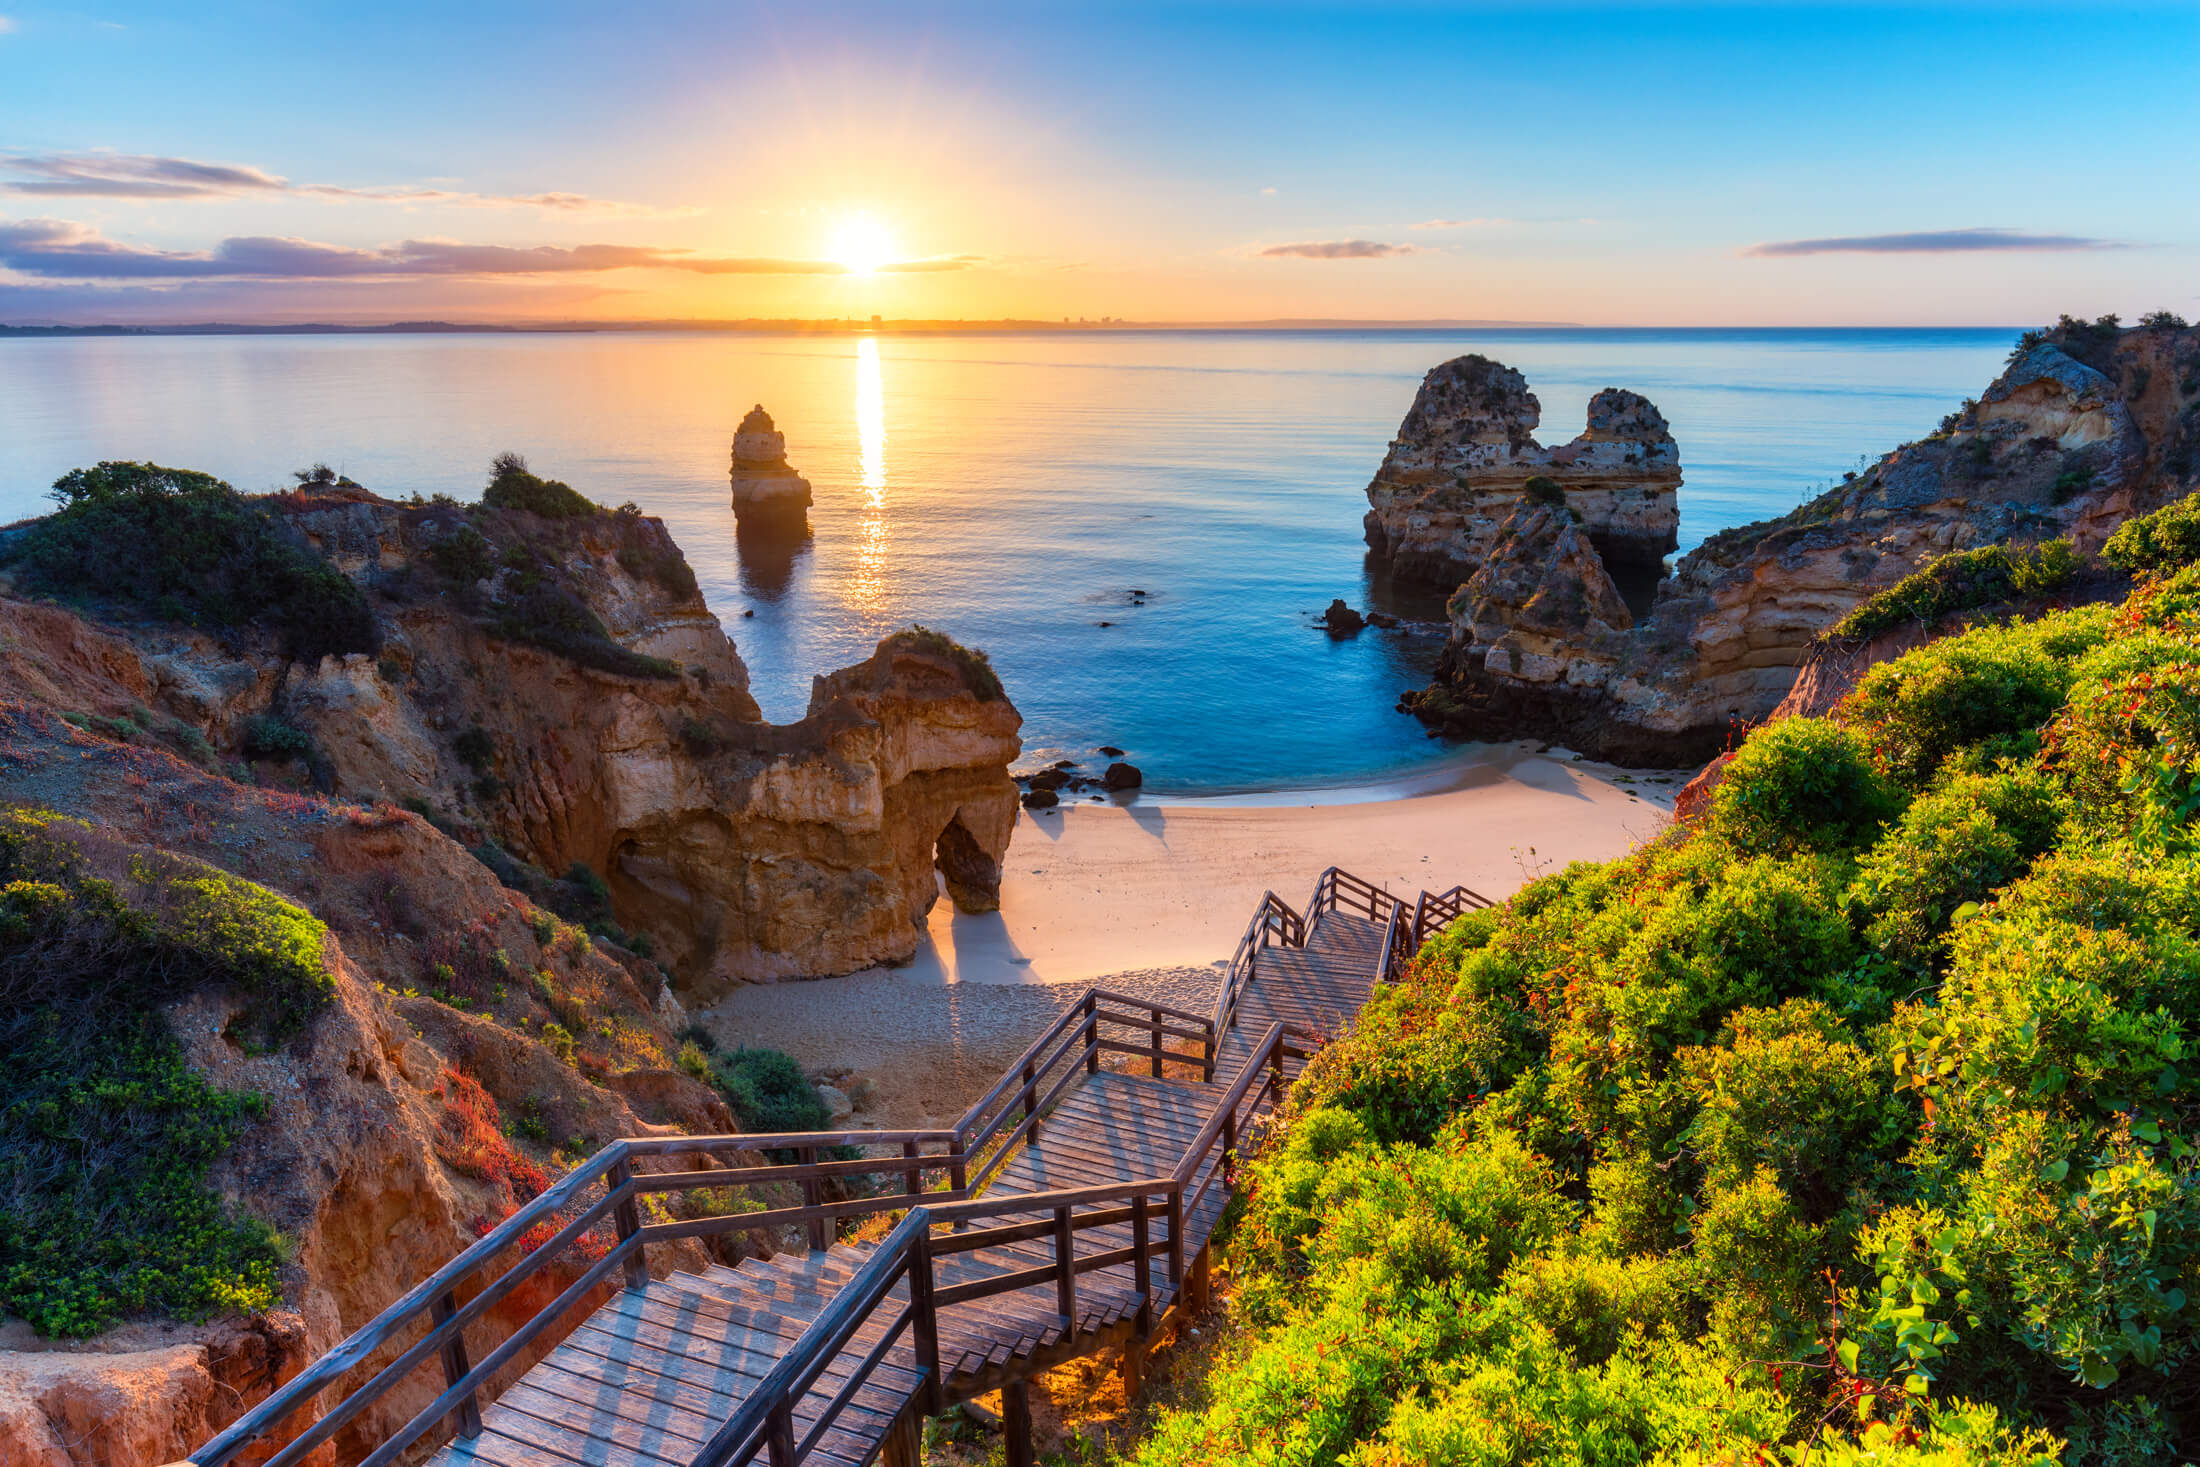 Lépcsők vezetnek le egy rejtett strandra a portugáliai Algarve-parton